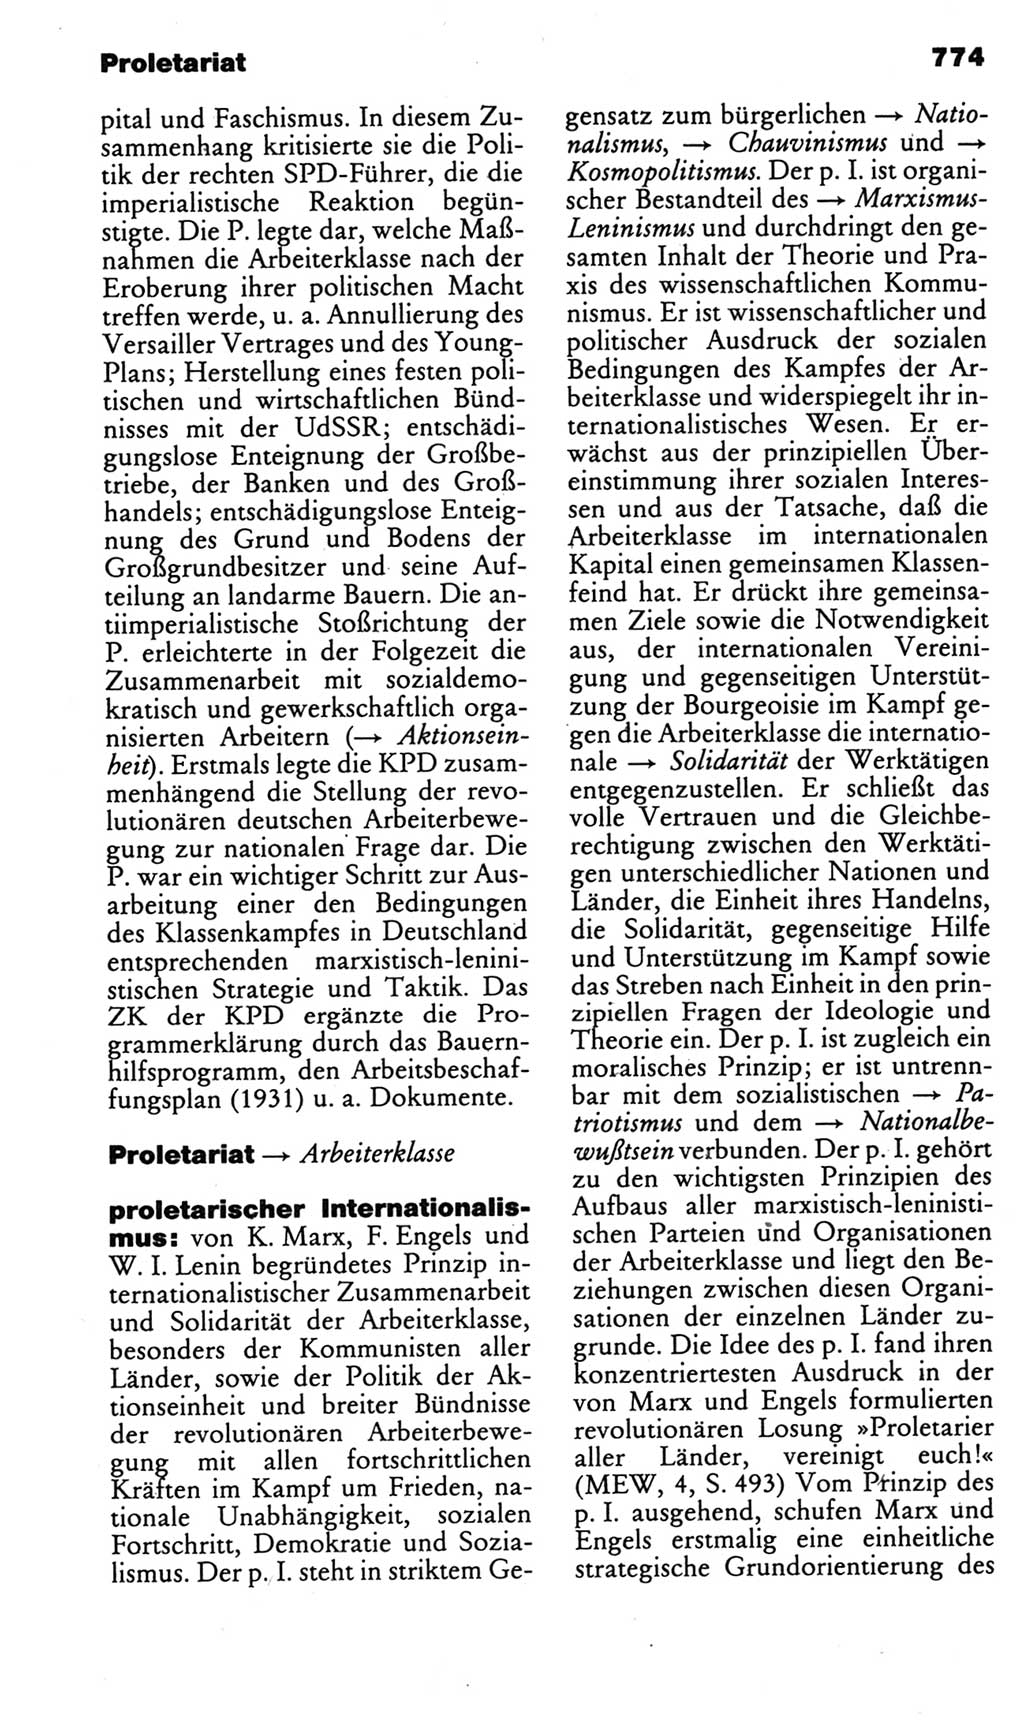 Kleines politisches Wörterbuch [Deutsche Demokratische Republik (DDR)] 1985, Seite 774 (Kl. pol. Wb. DDR 1985, S. 774)